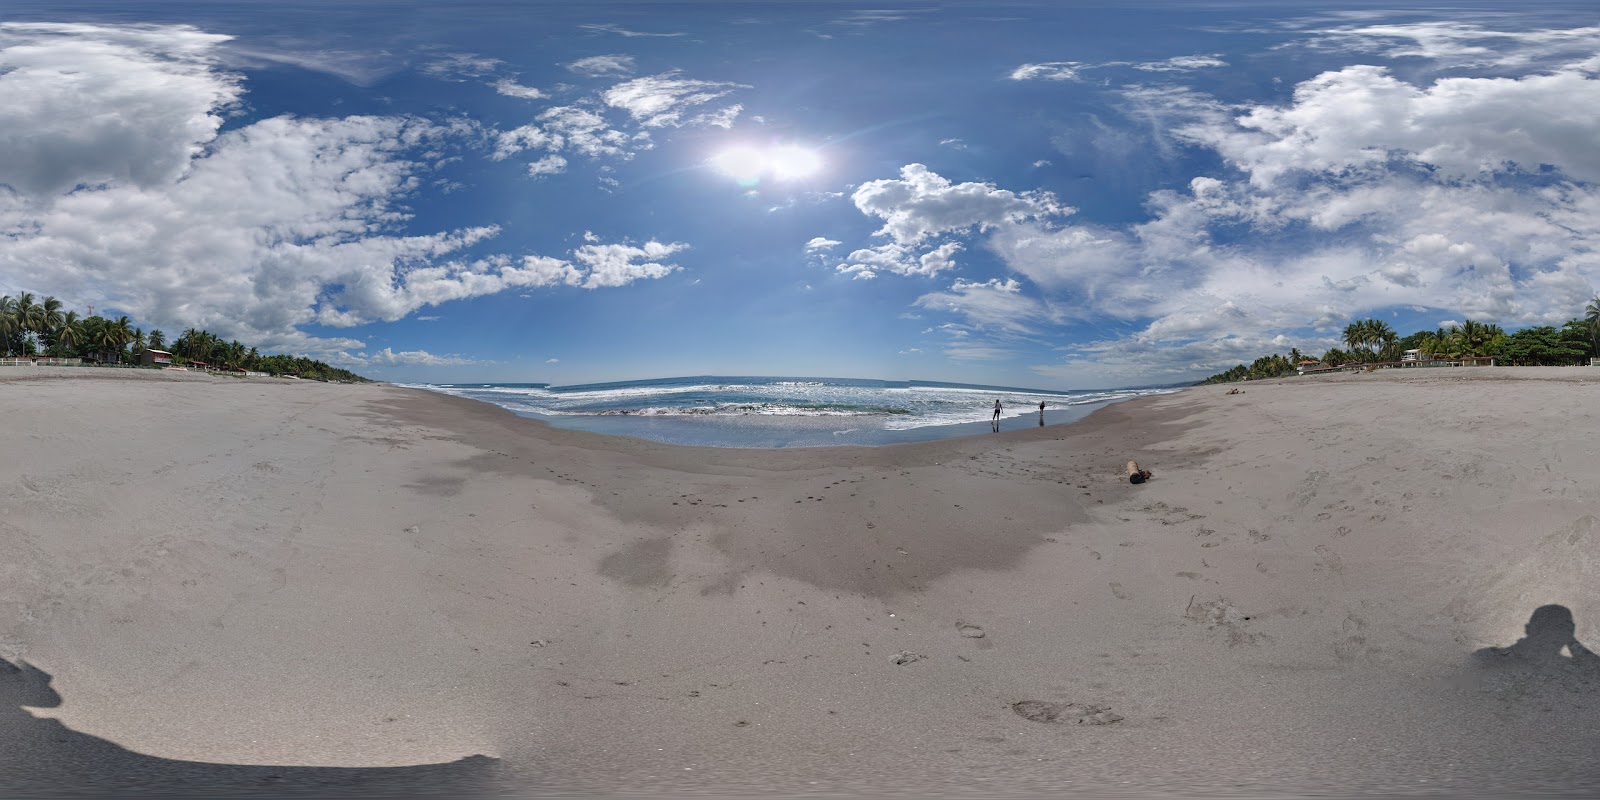 Foto de San Diego beach - lugar popular entre os apreciadores de relaxamento